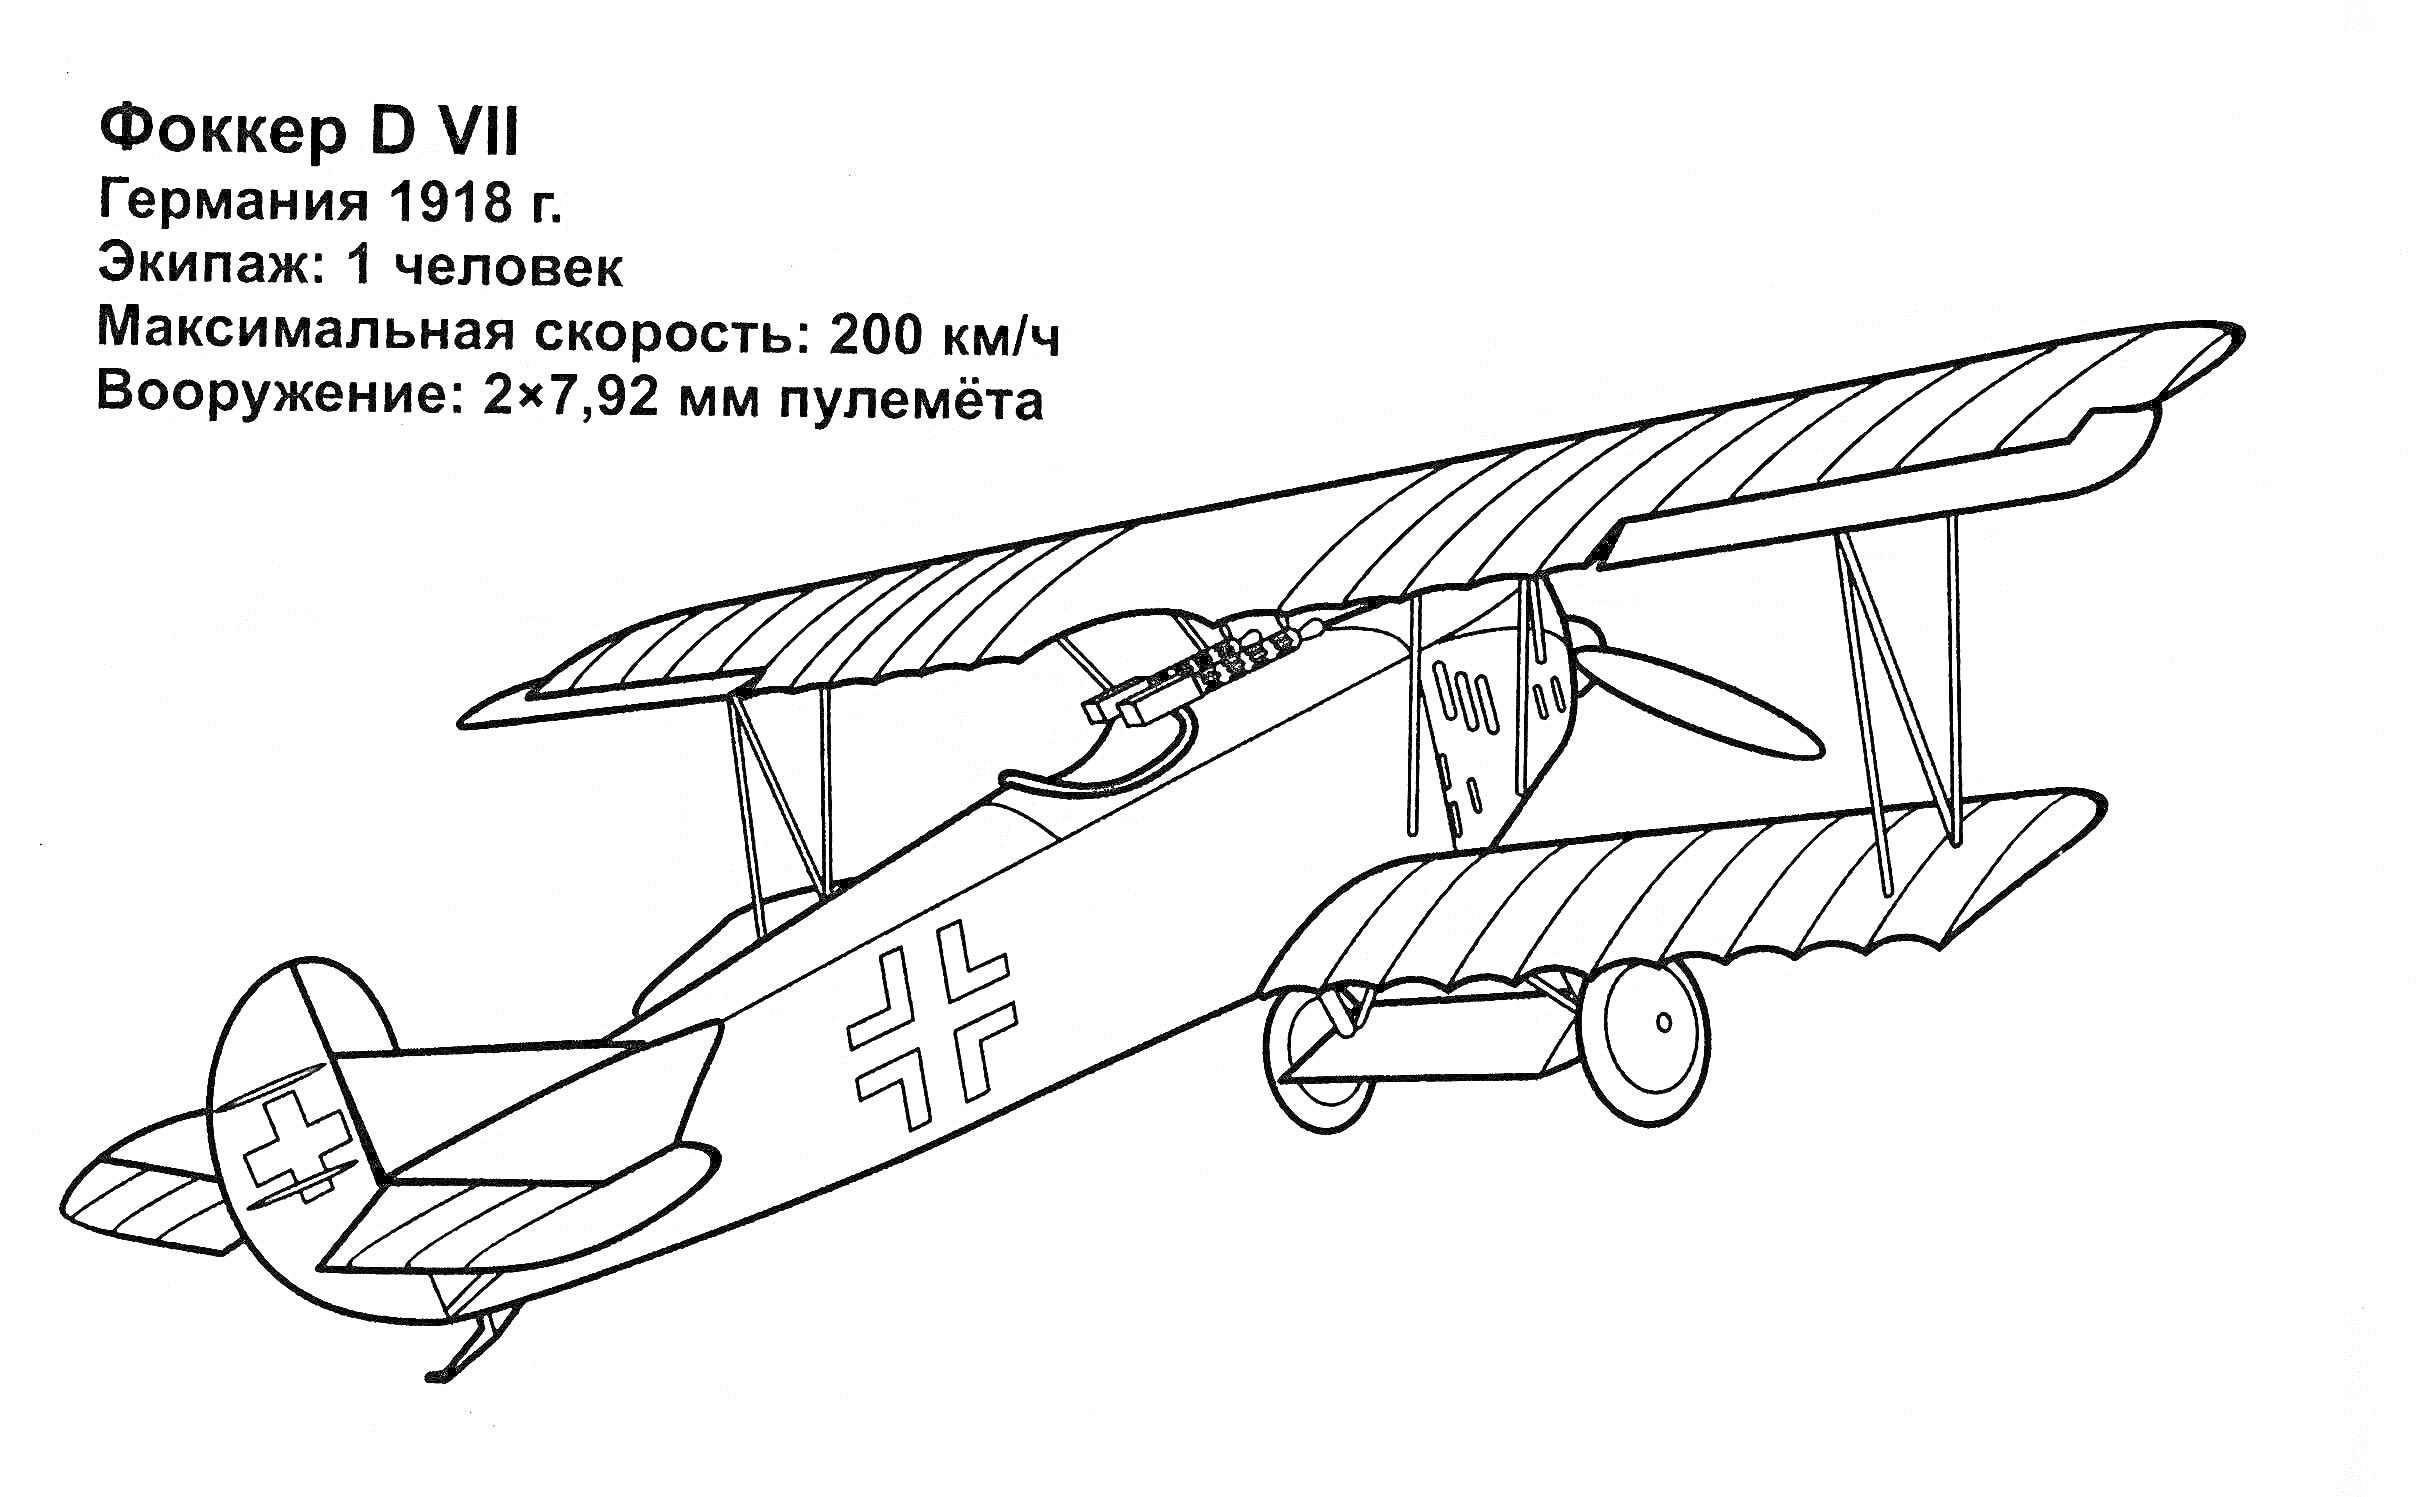 Военный самолёт Fokker D VII с описанием характеристик. На изображении видно биплан с крестами на крыльях и фюзеляже, пилот в кабине, а также текстовая информация о самолёте: 